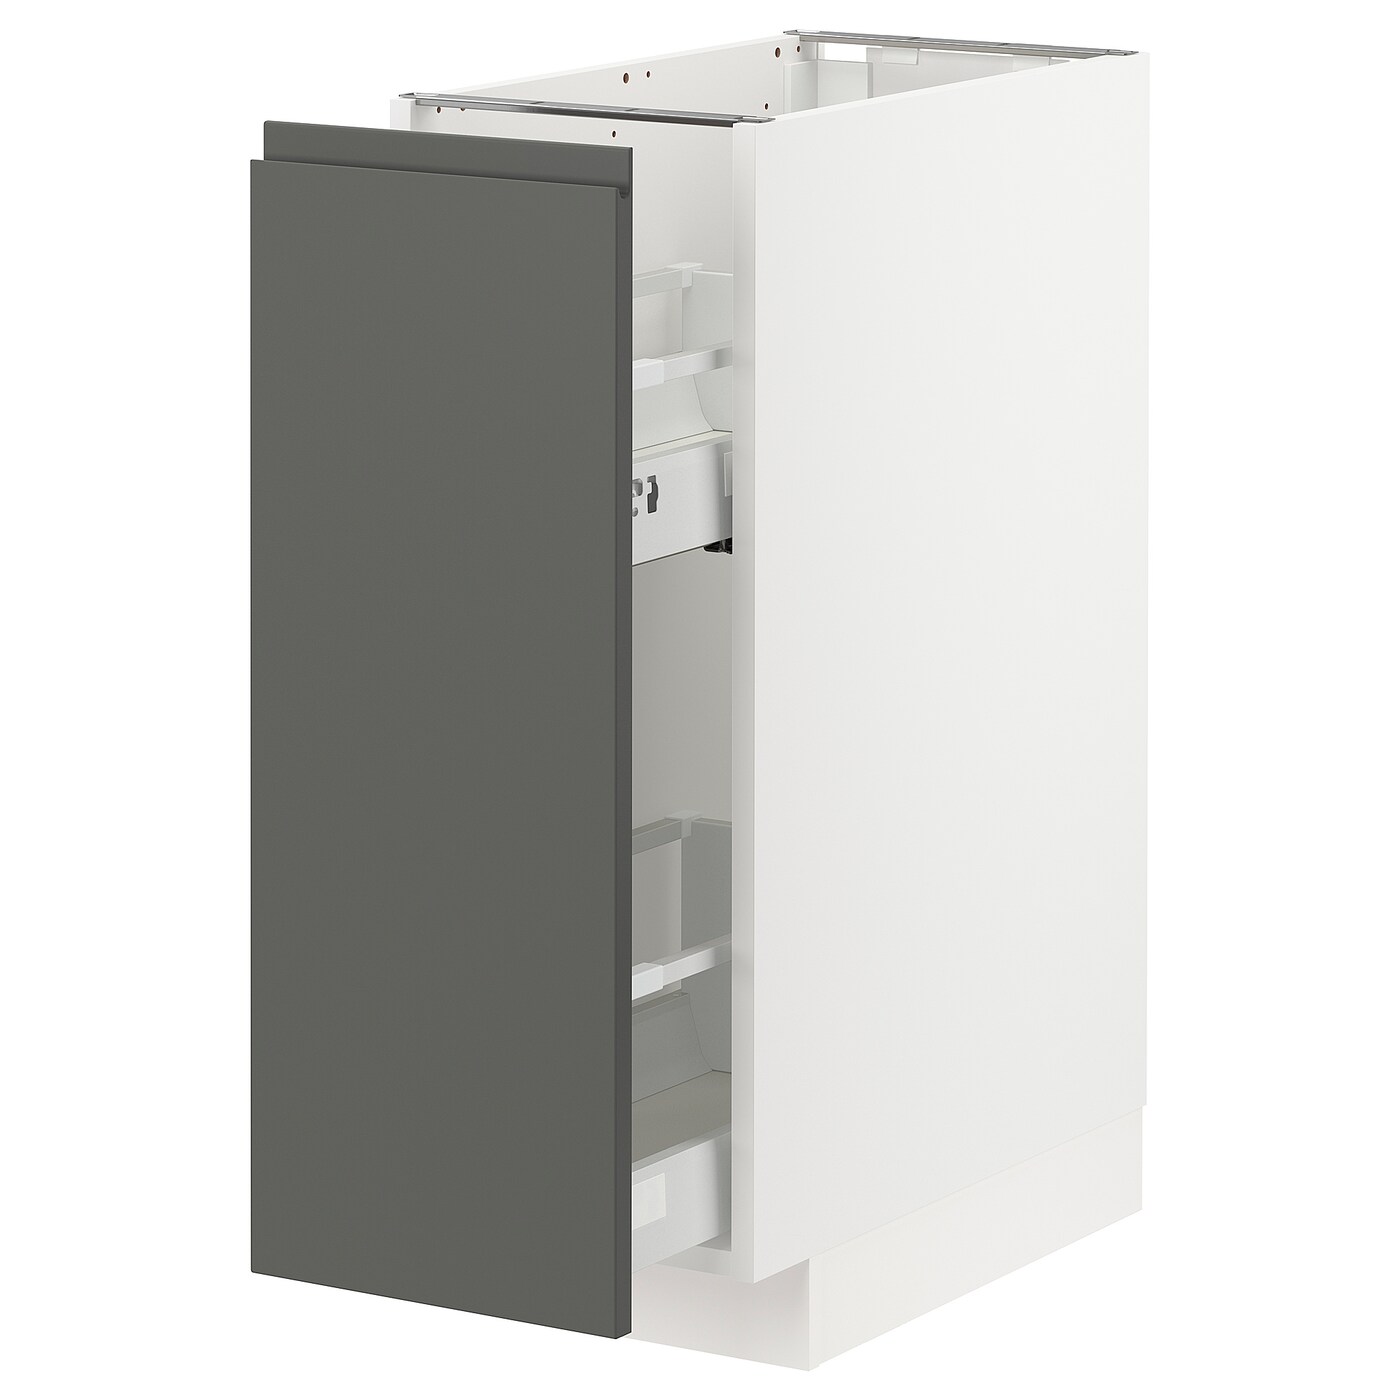 Напольный кухонный шкаф - IKEA METOD MAXIMERA, 88x62x30см, белый/темно-серый, МЕТОД МАКСИМЕРА ИКЕА